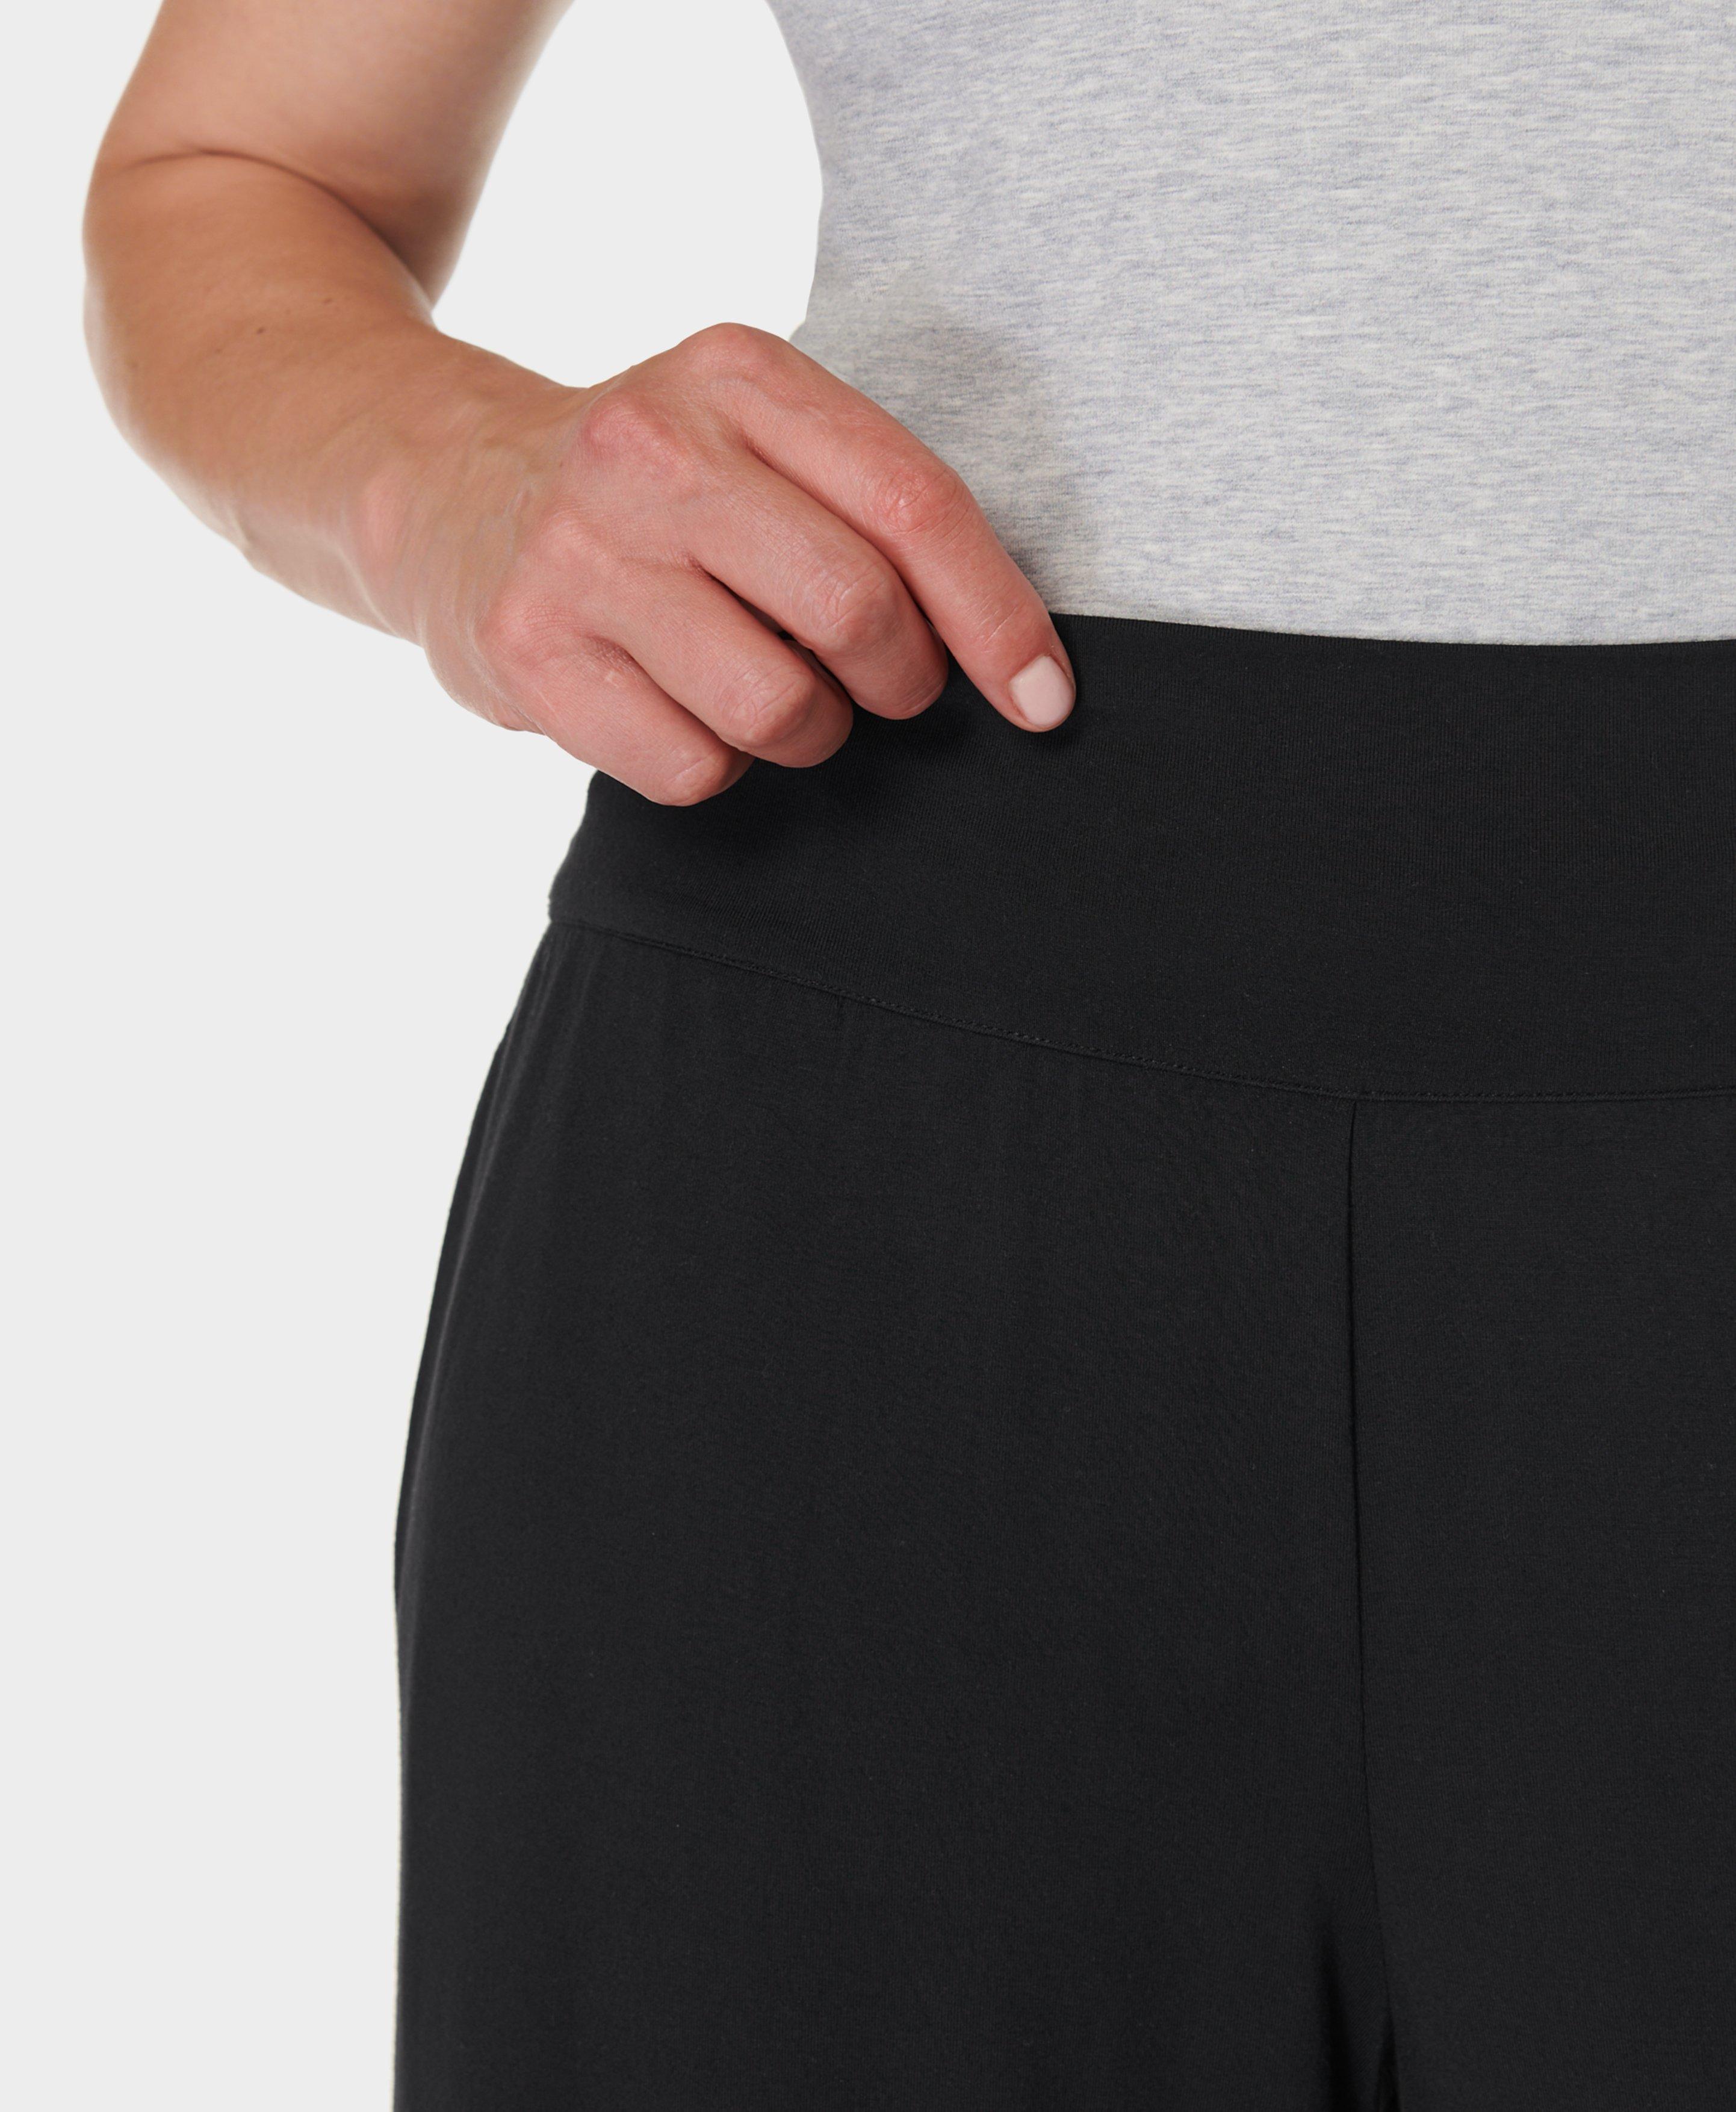 GB, Luxe Wide Leg Pants - Black, Workout Pants Women